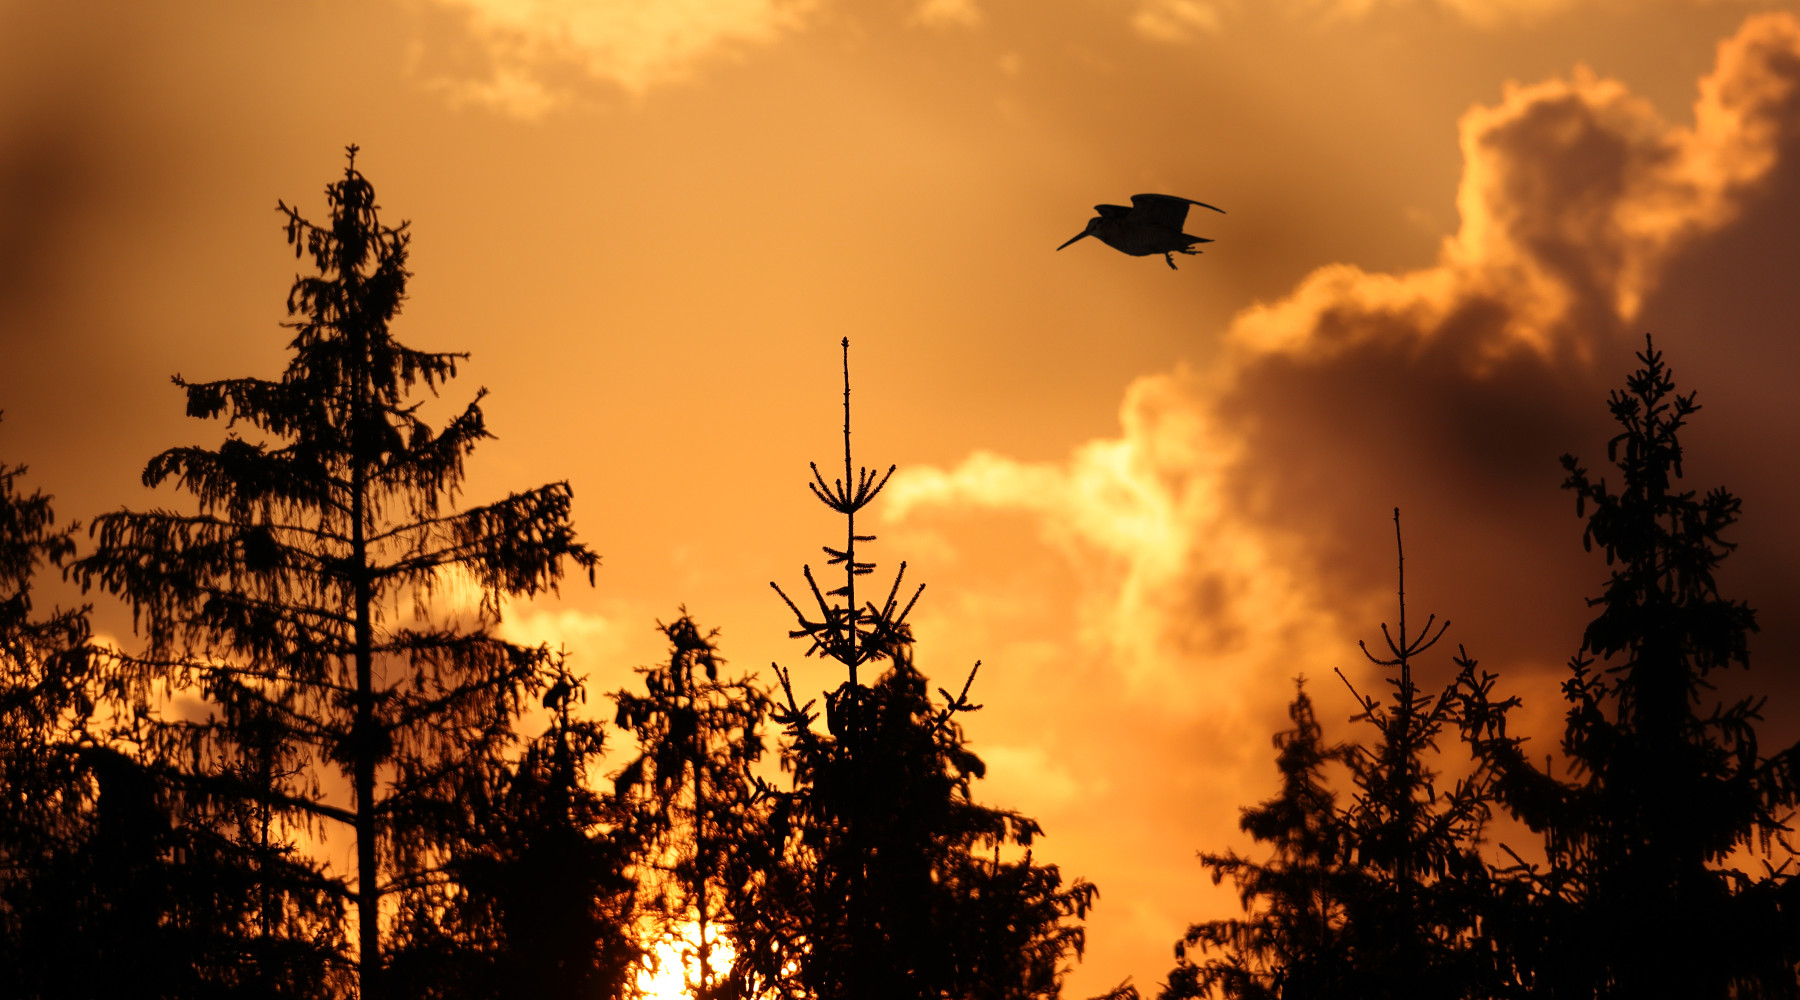 Conservazione delle specie migratrici: beccaccia in volo al tramonto